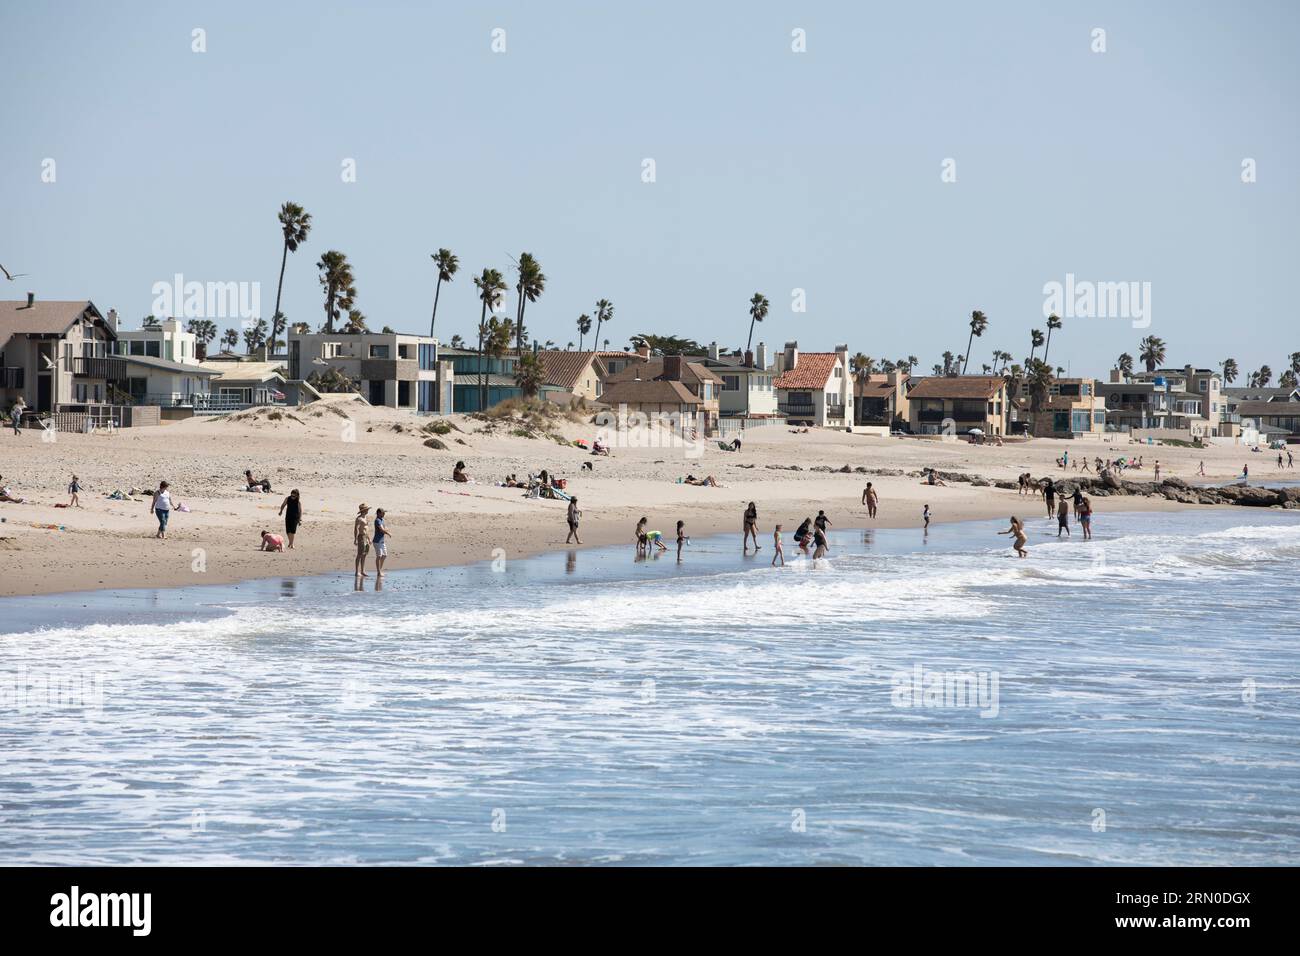 Ventura, California, USA - 31 marzo 2021: Il sole del pomeriggio splende mentre le onde si infrangono sulla spiaggia di Ventura, mentre le persone vanno a nuotare. Foto Stock